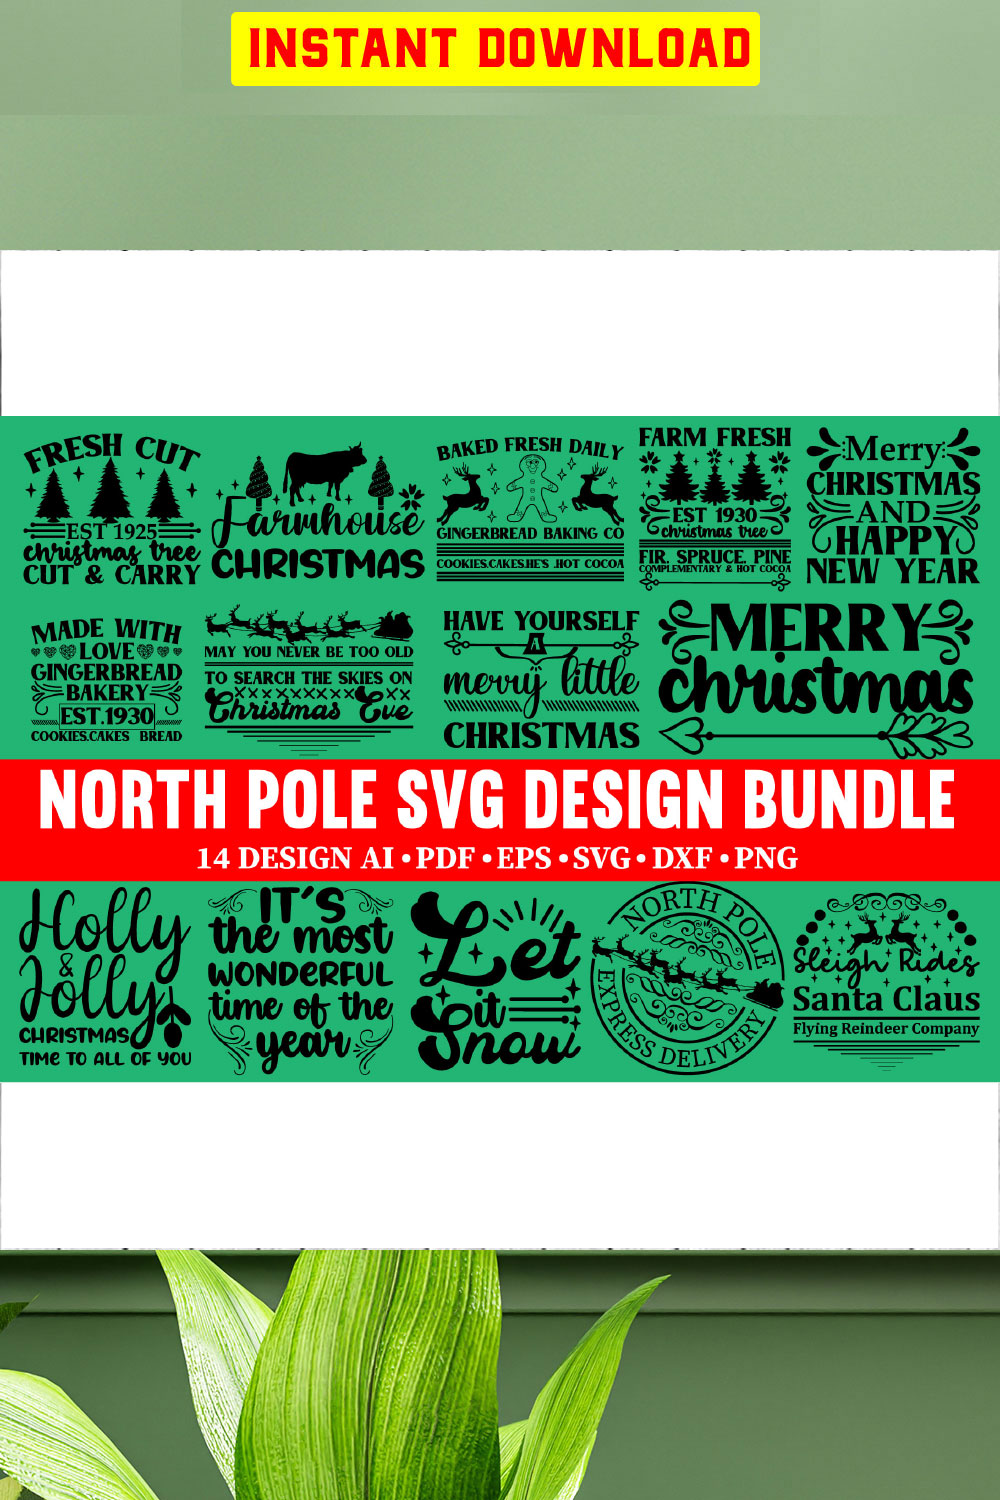 North Pole Bundle SVG Files Vol-03 pinterest preview image.